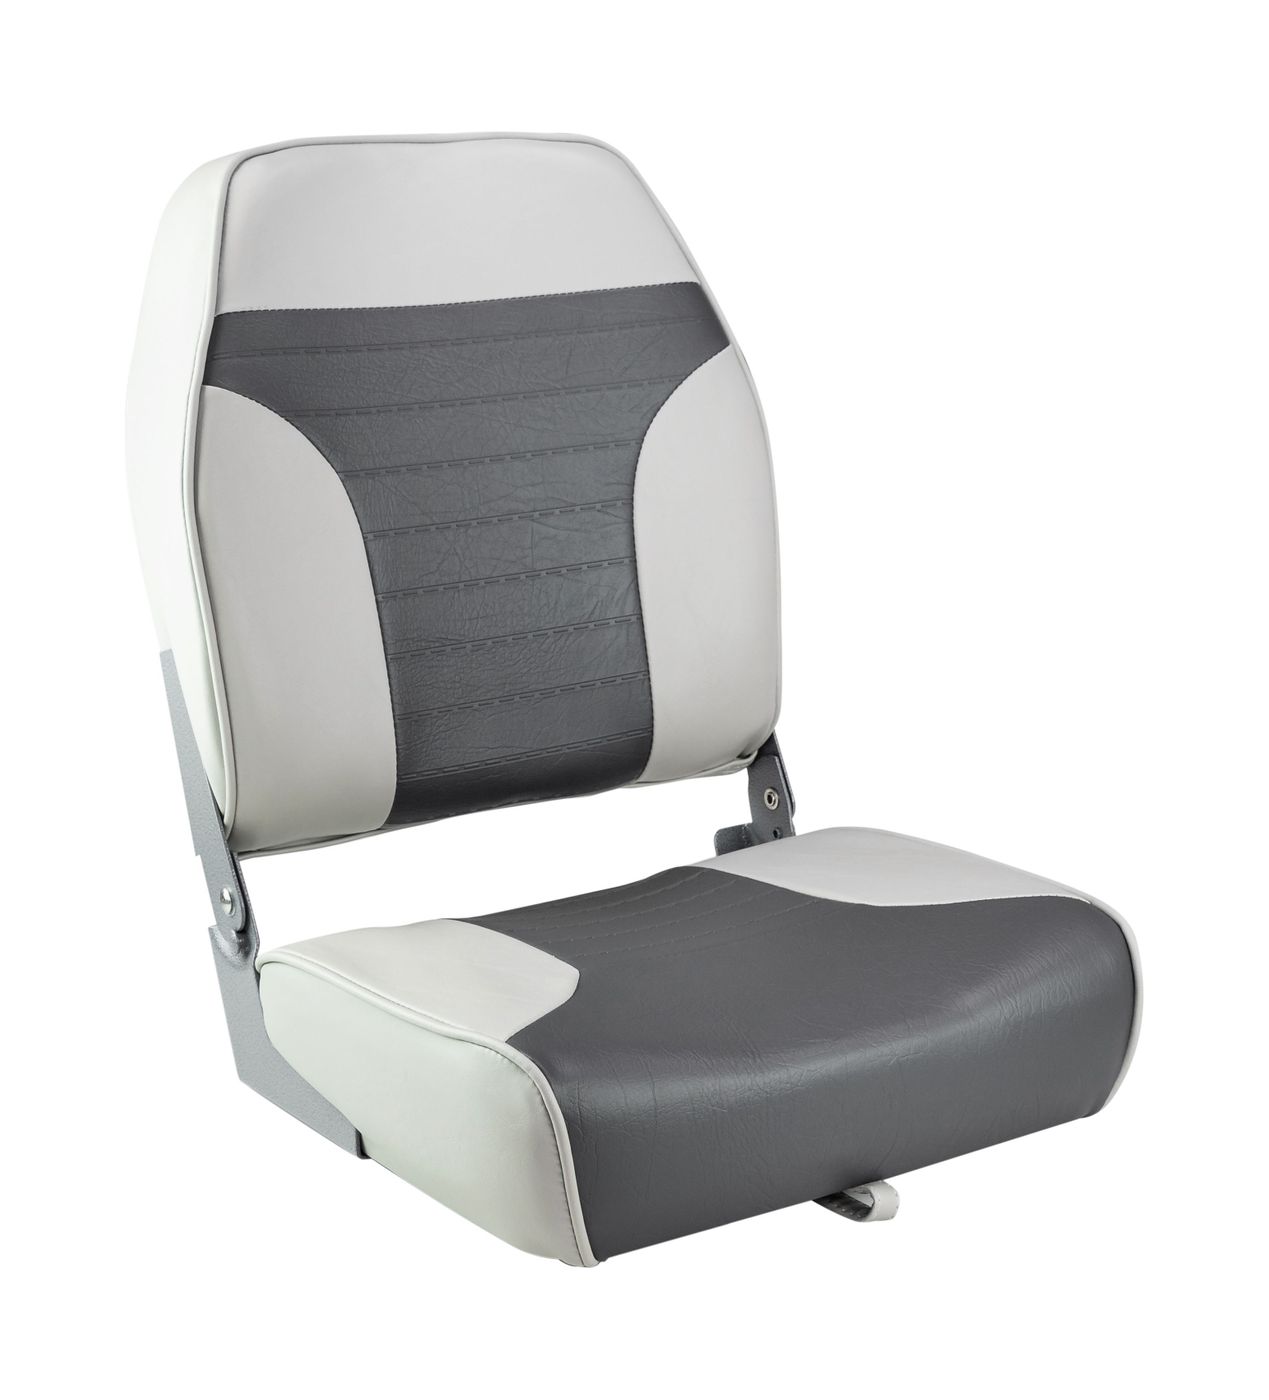 Кресло складное мягкое ECONOMY с высокой спинкой, цвет серый/темно-серый 1040663